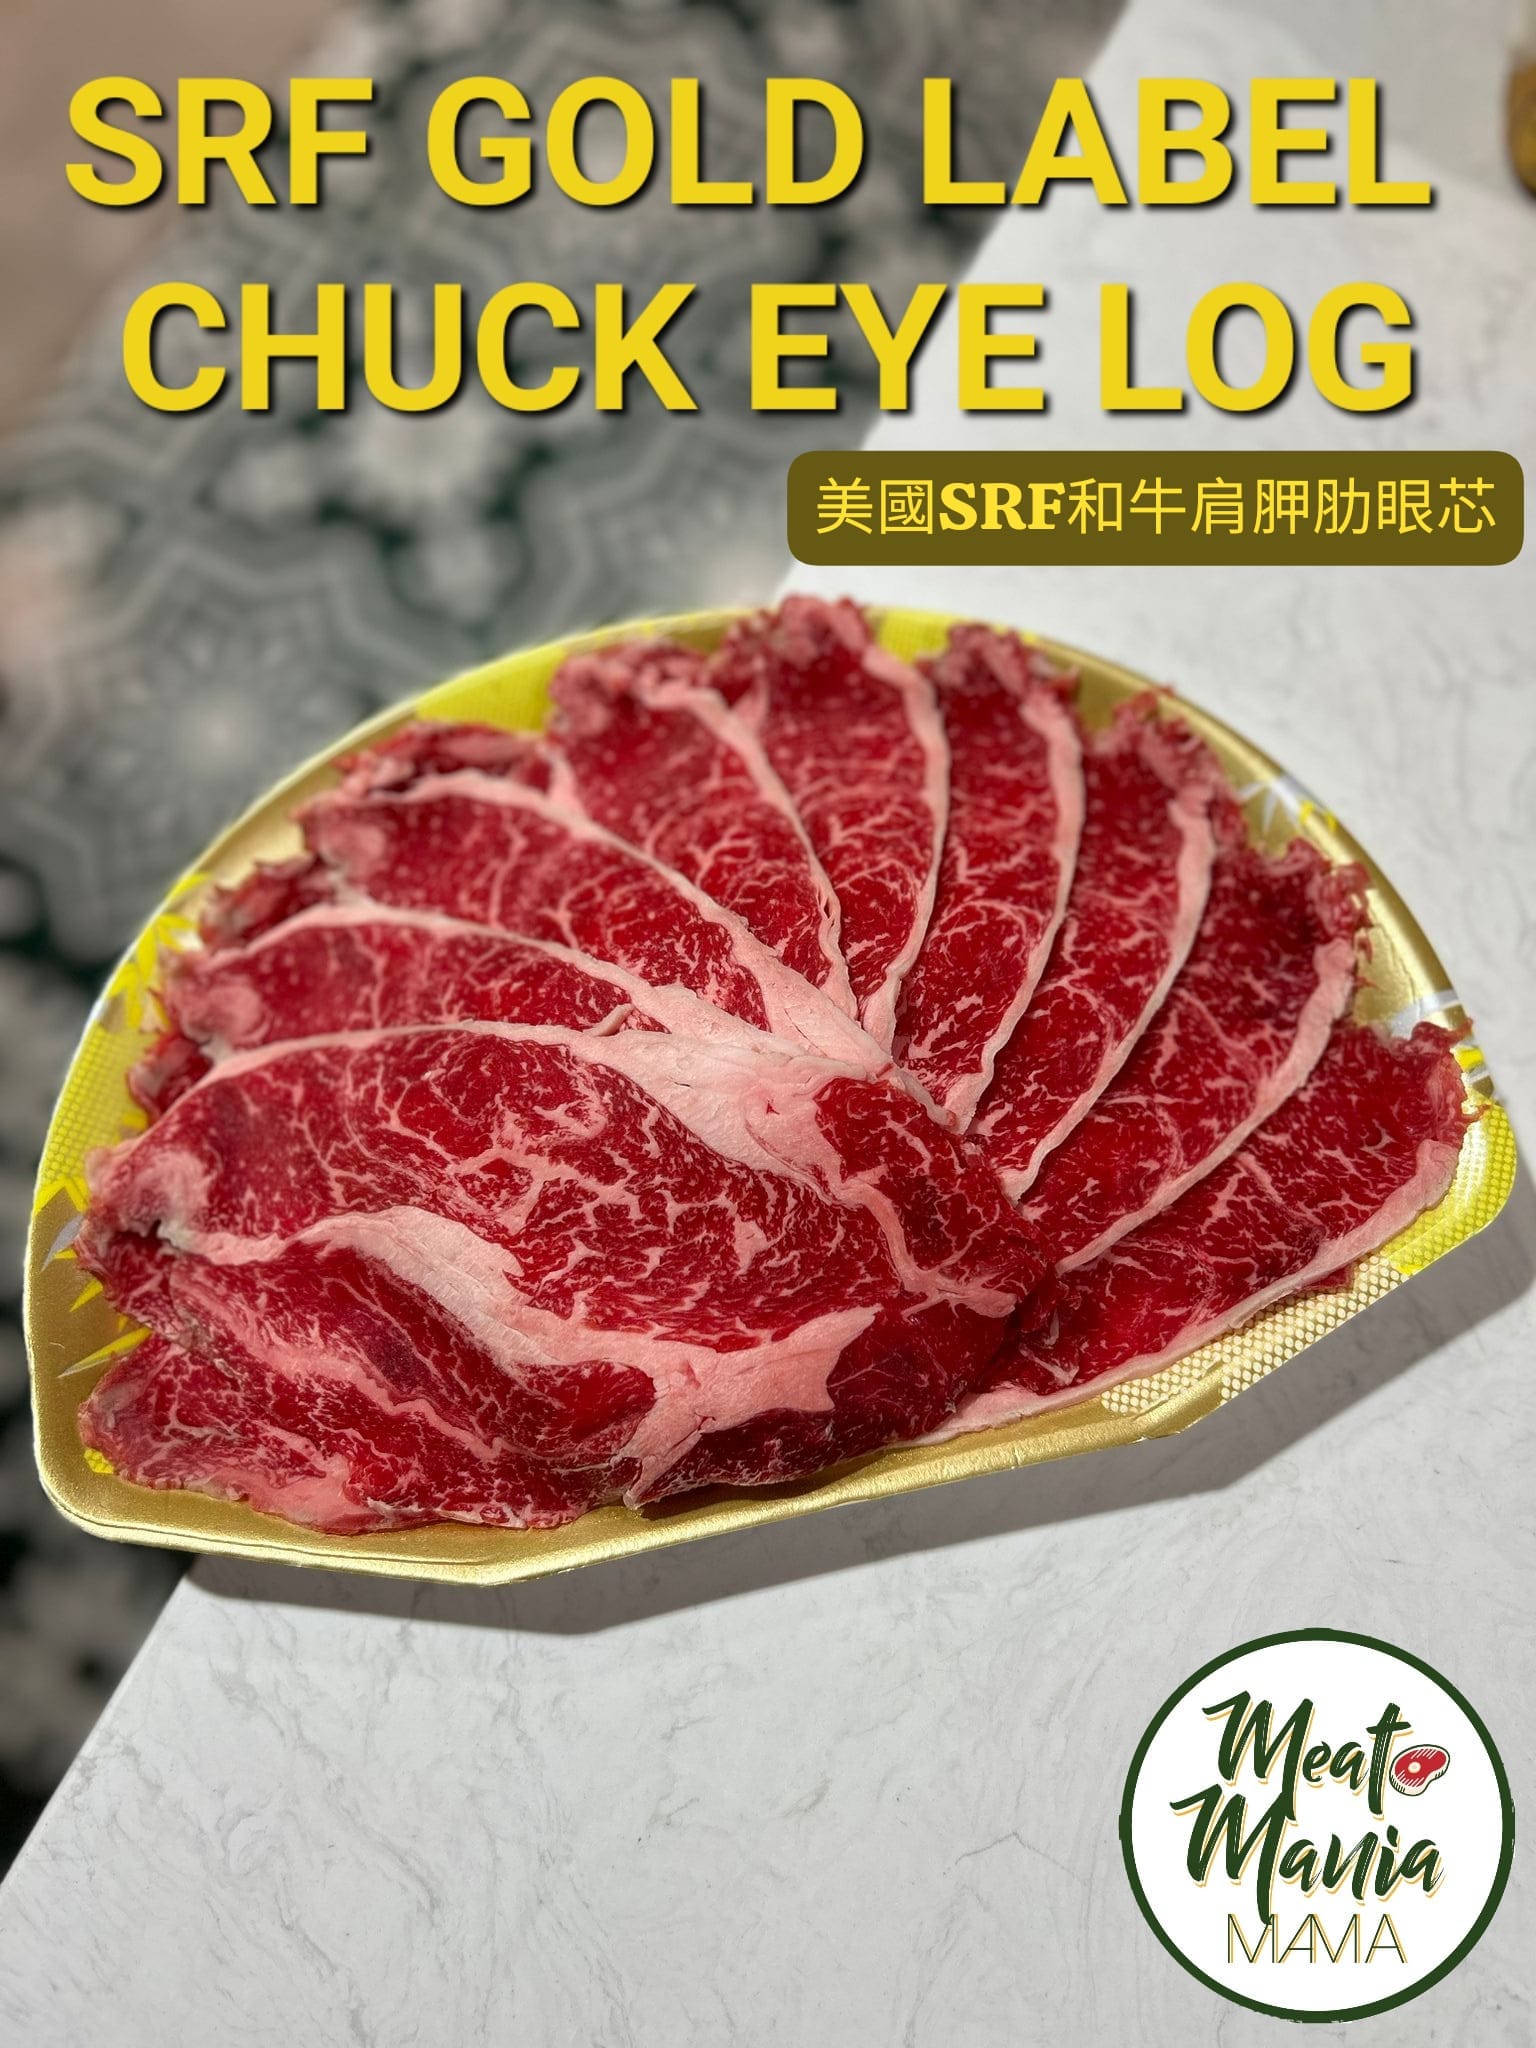 美國SRF極黑和牛 (金標) - Chuck Eye Log 肩胛肋眼芯(火鍋片, 0.5磅)